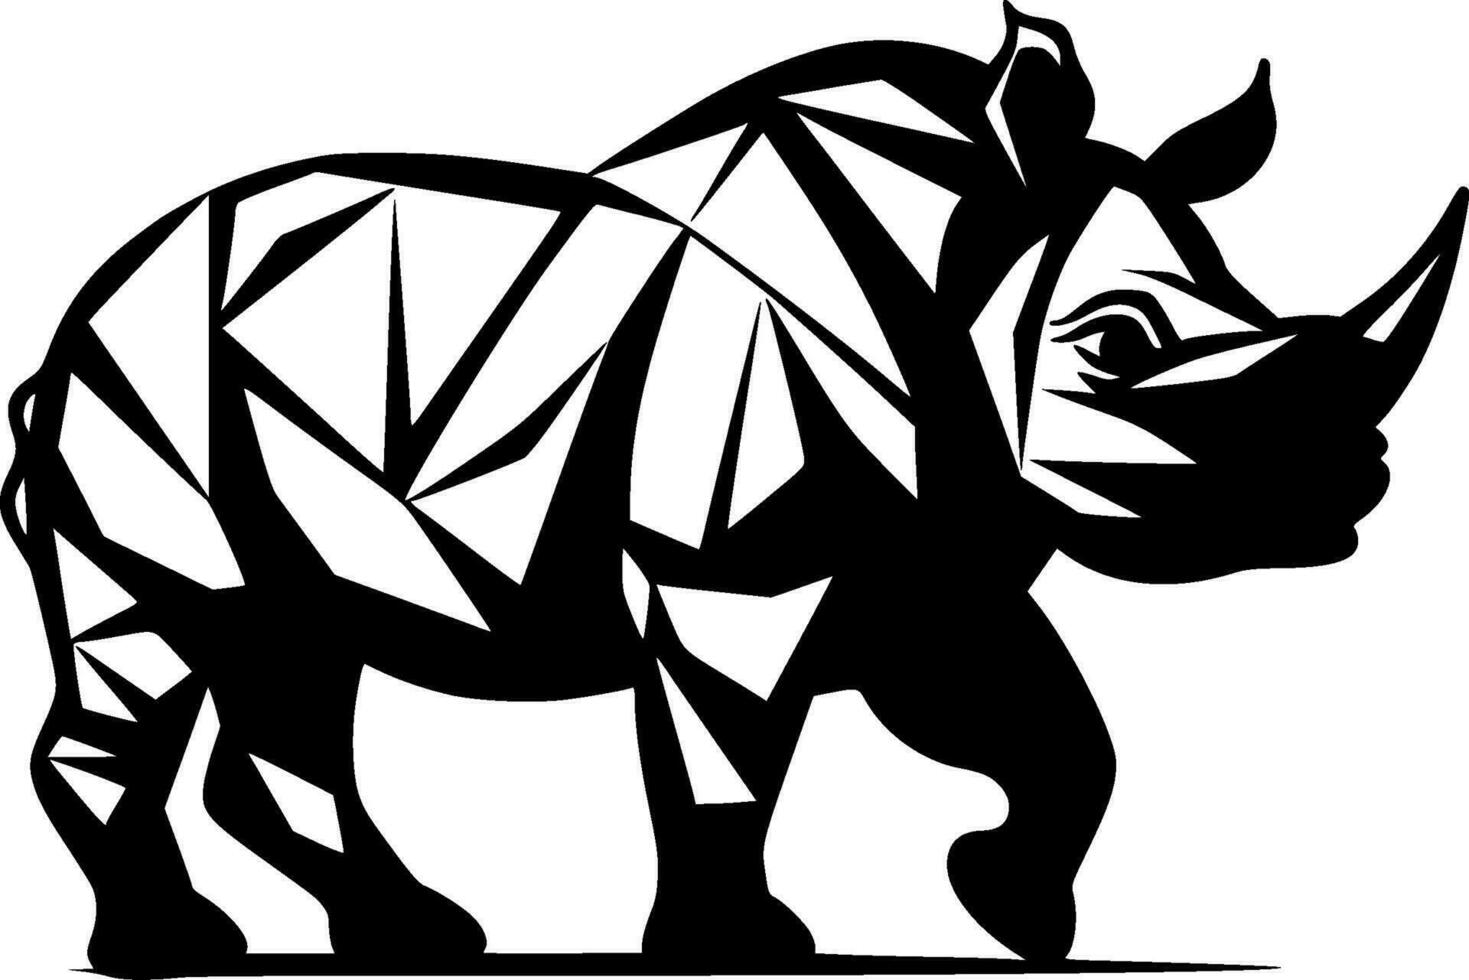 Nashorn - - minimalistisch und eben Logo - - Vektor Illustration